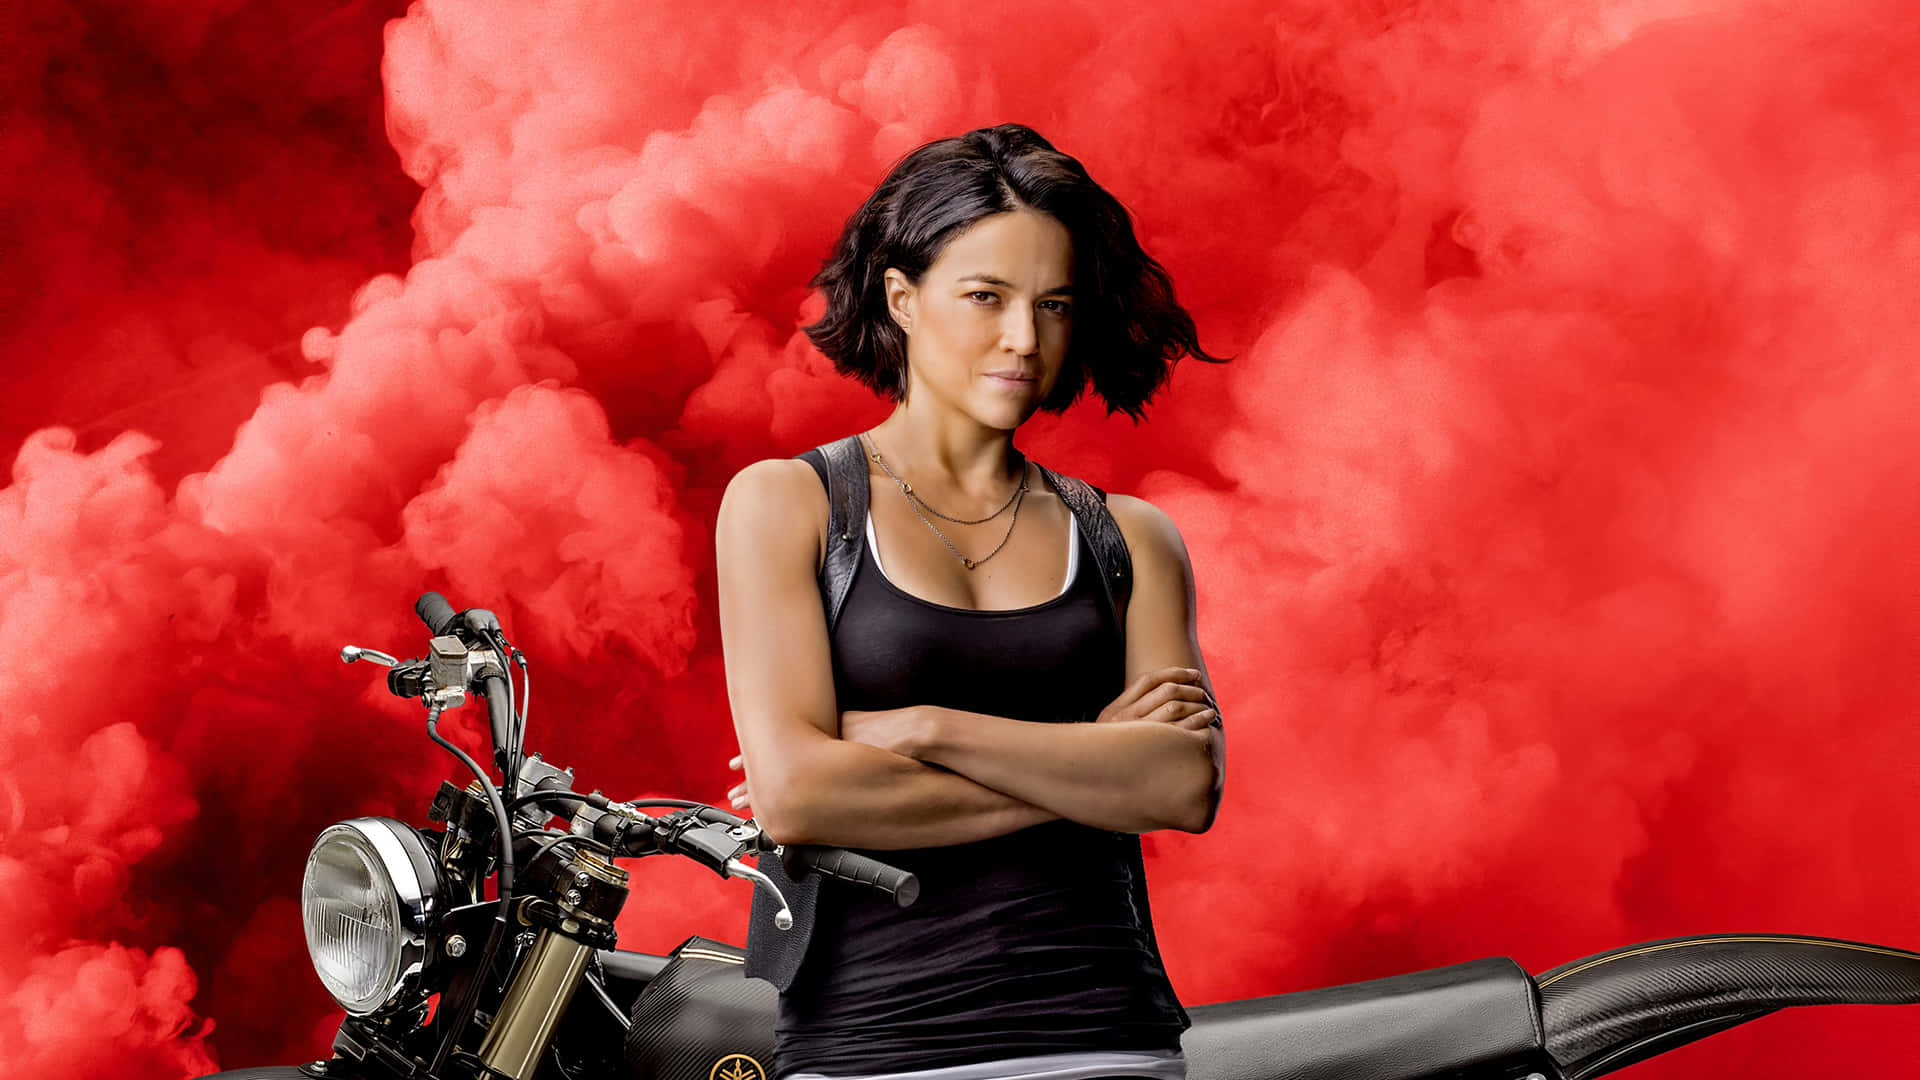 Enkvinna Stående På En Motorcykel Med Rök Som Kommer Ut Ur Den Wallpaper